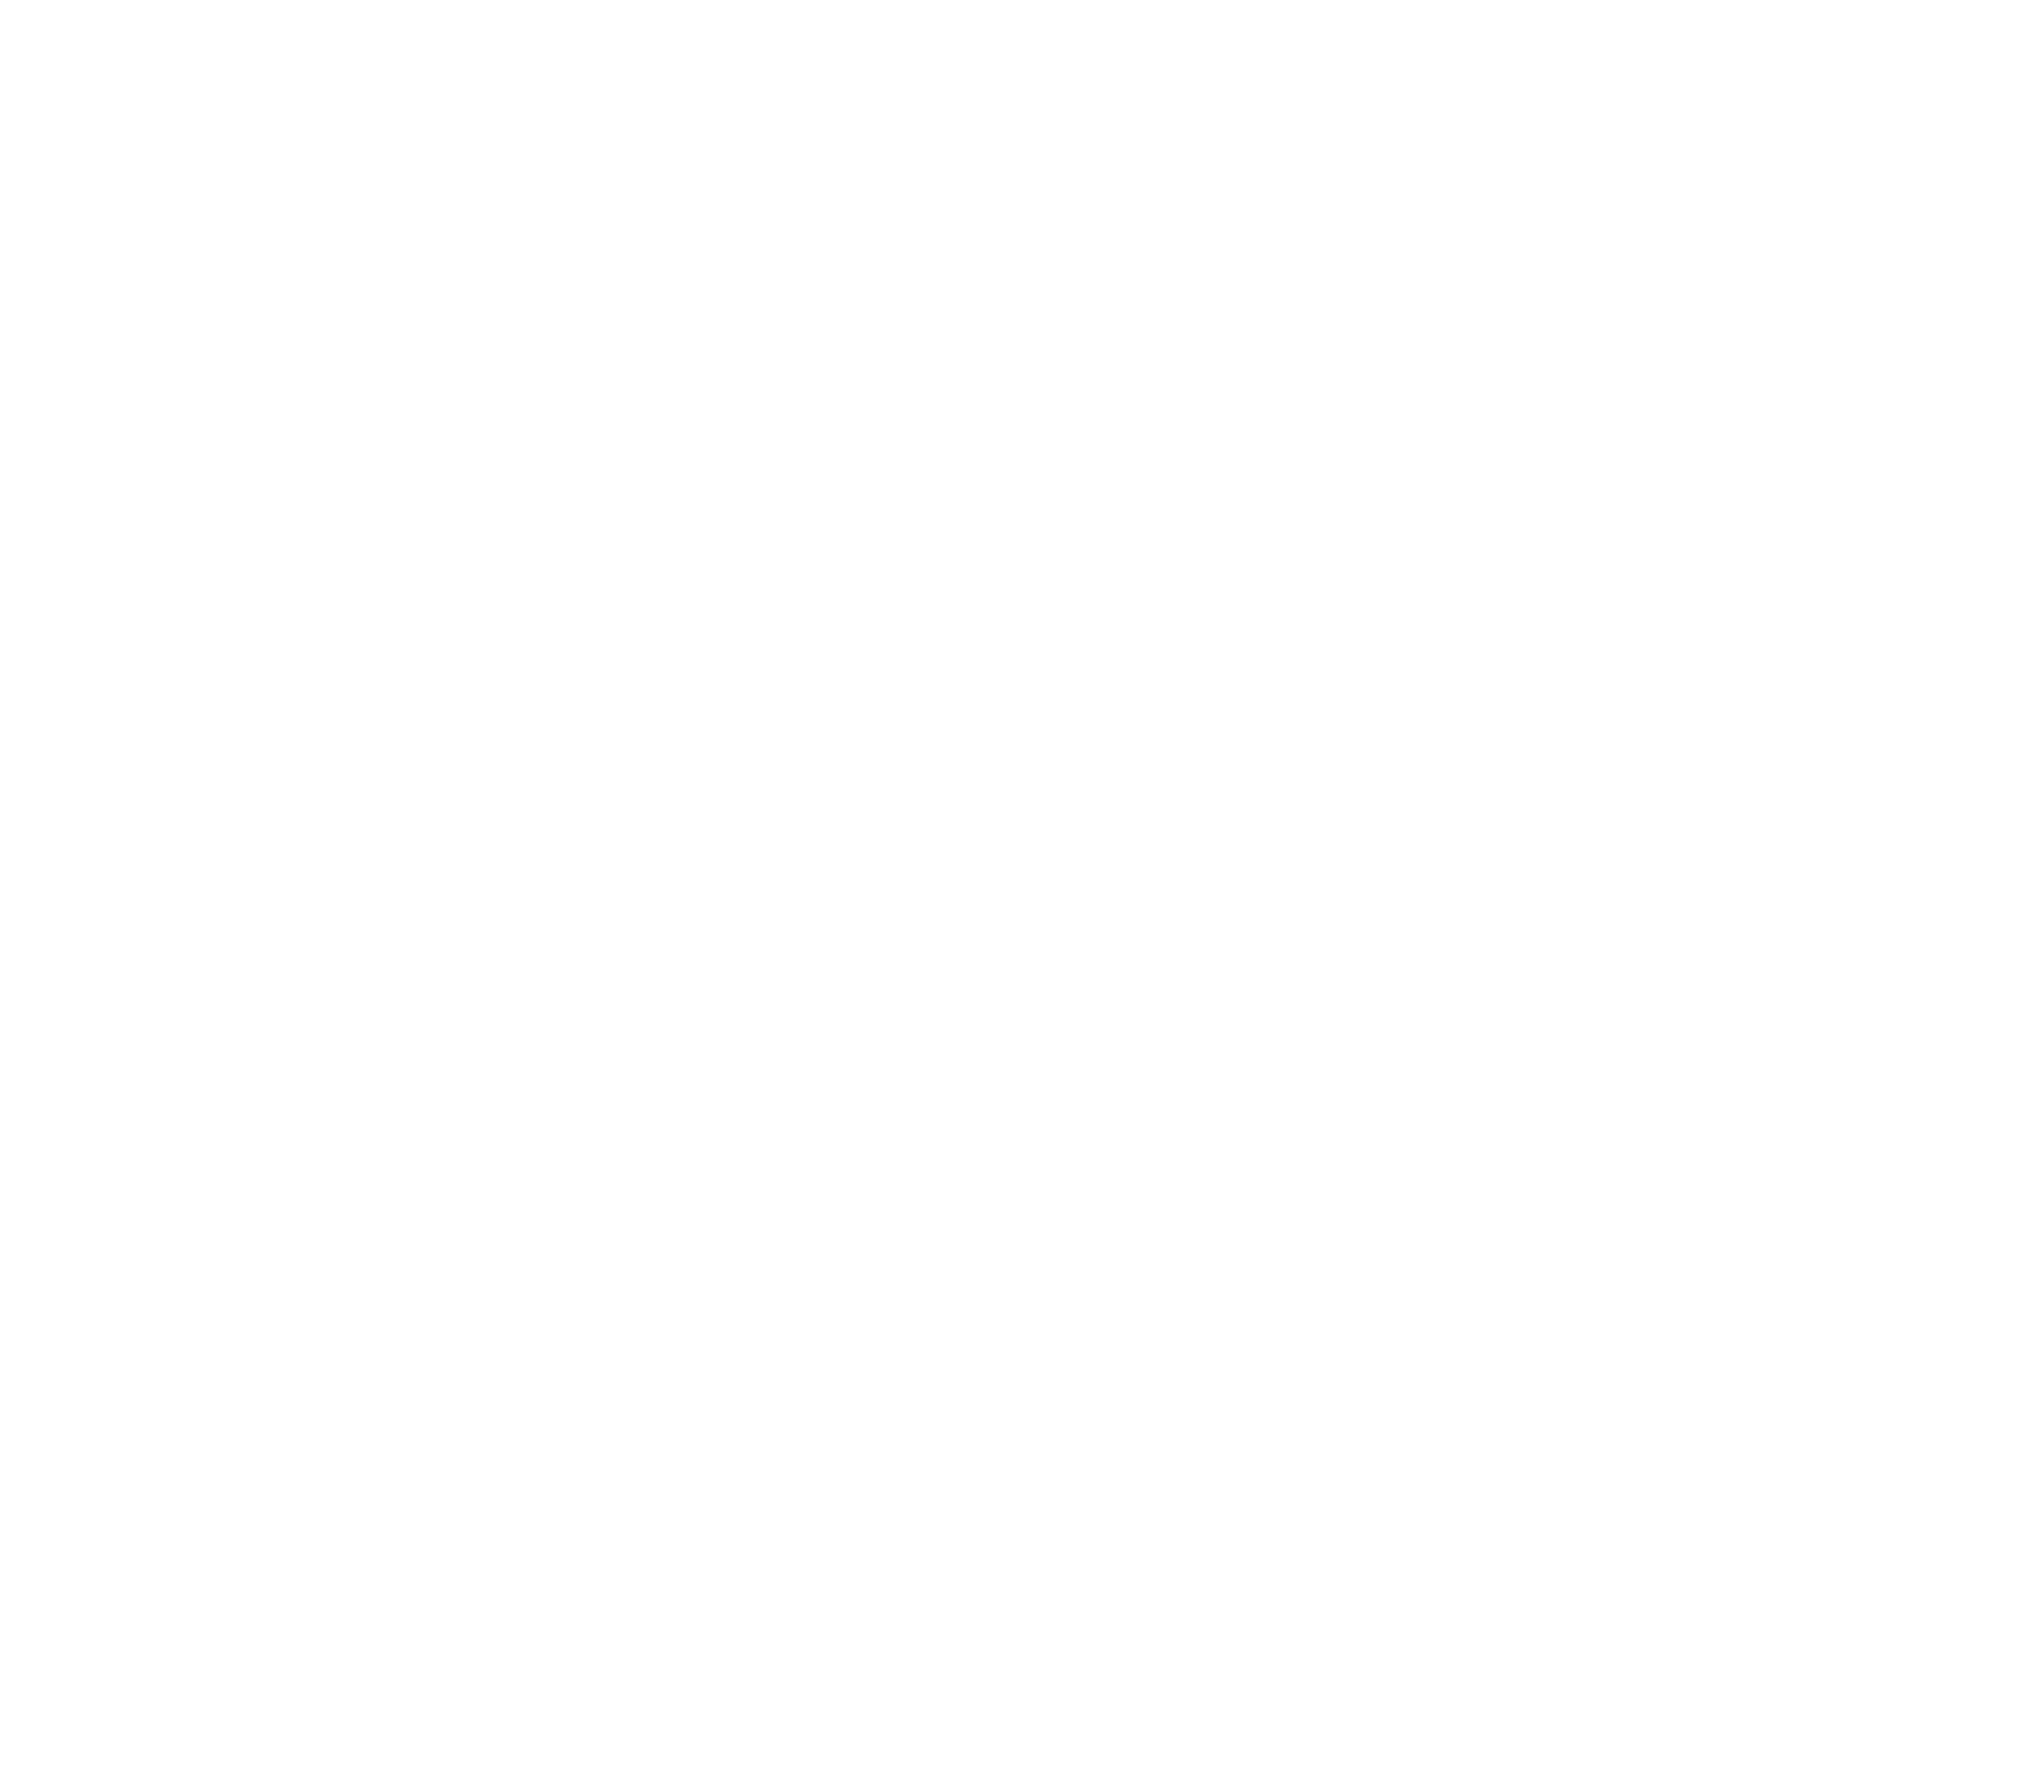 relentlessremuda